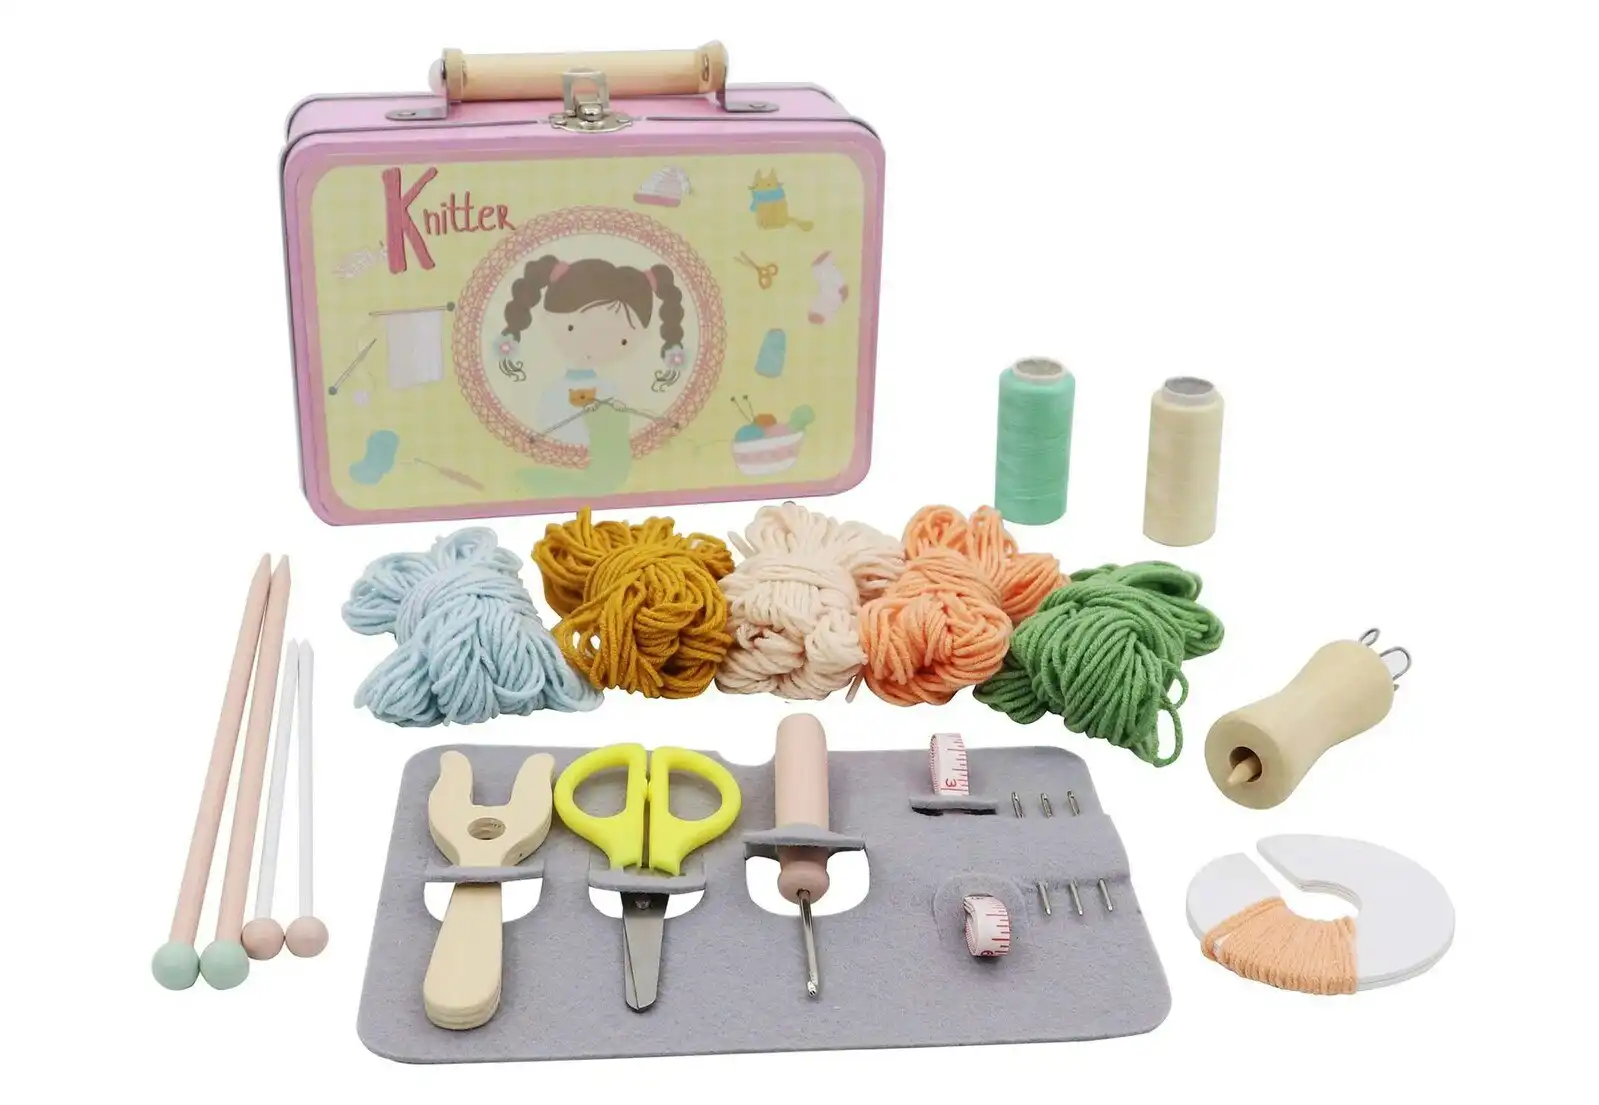 Kaper Kidz Calm & Breezy Knitting Kit In Tin Case Craft Kit For Kids/Children 3+